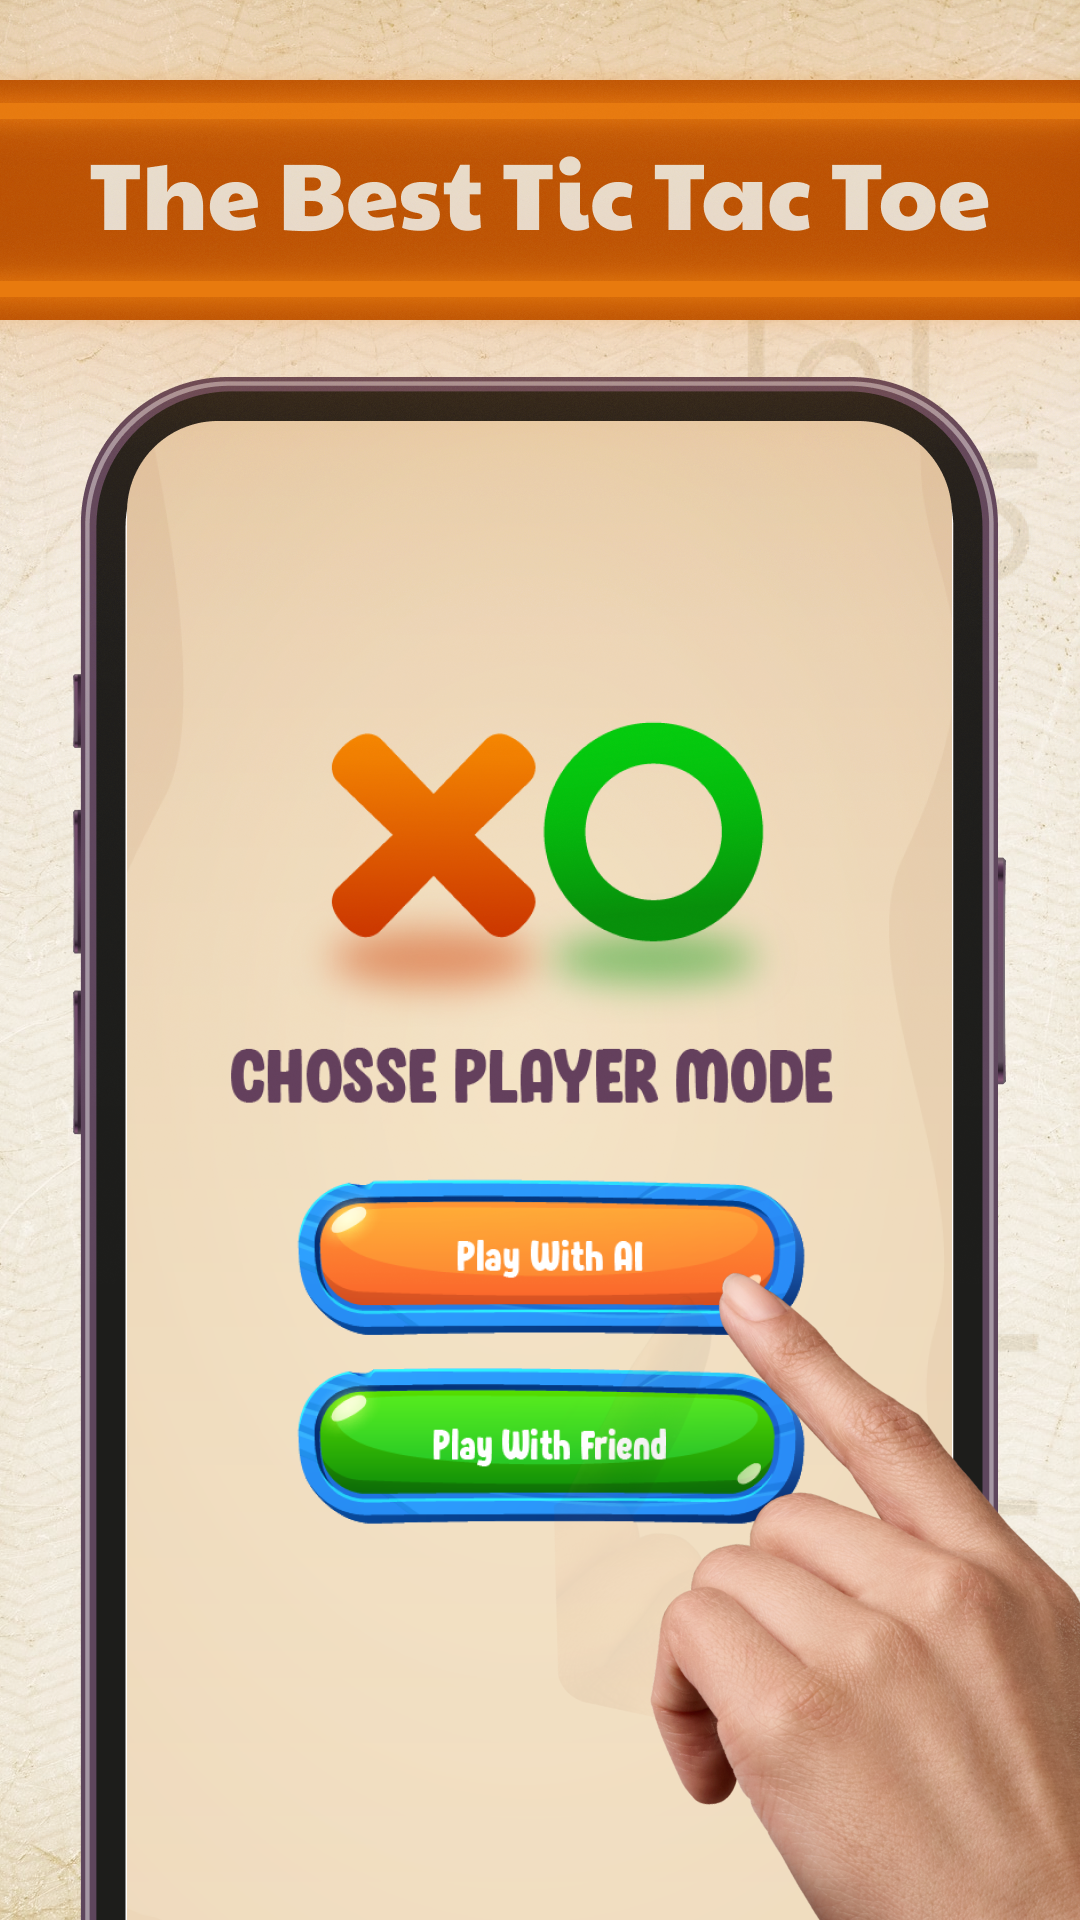 Download do APK de jogo da velha com 2 jogadores para Android